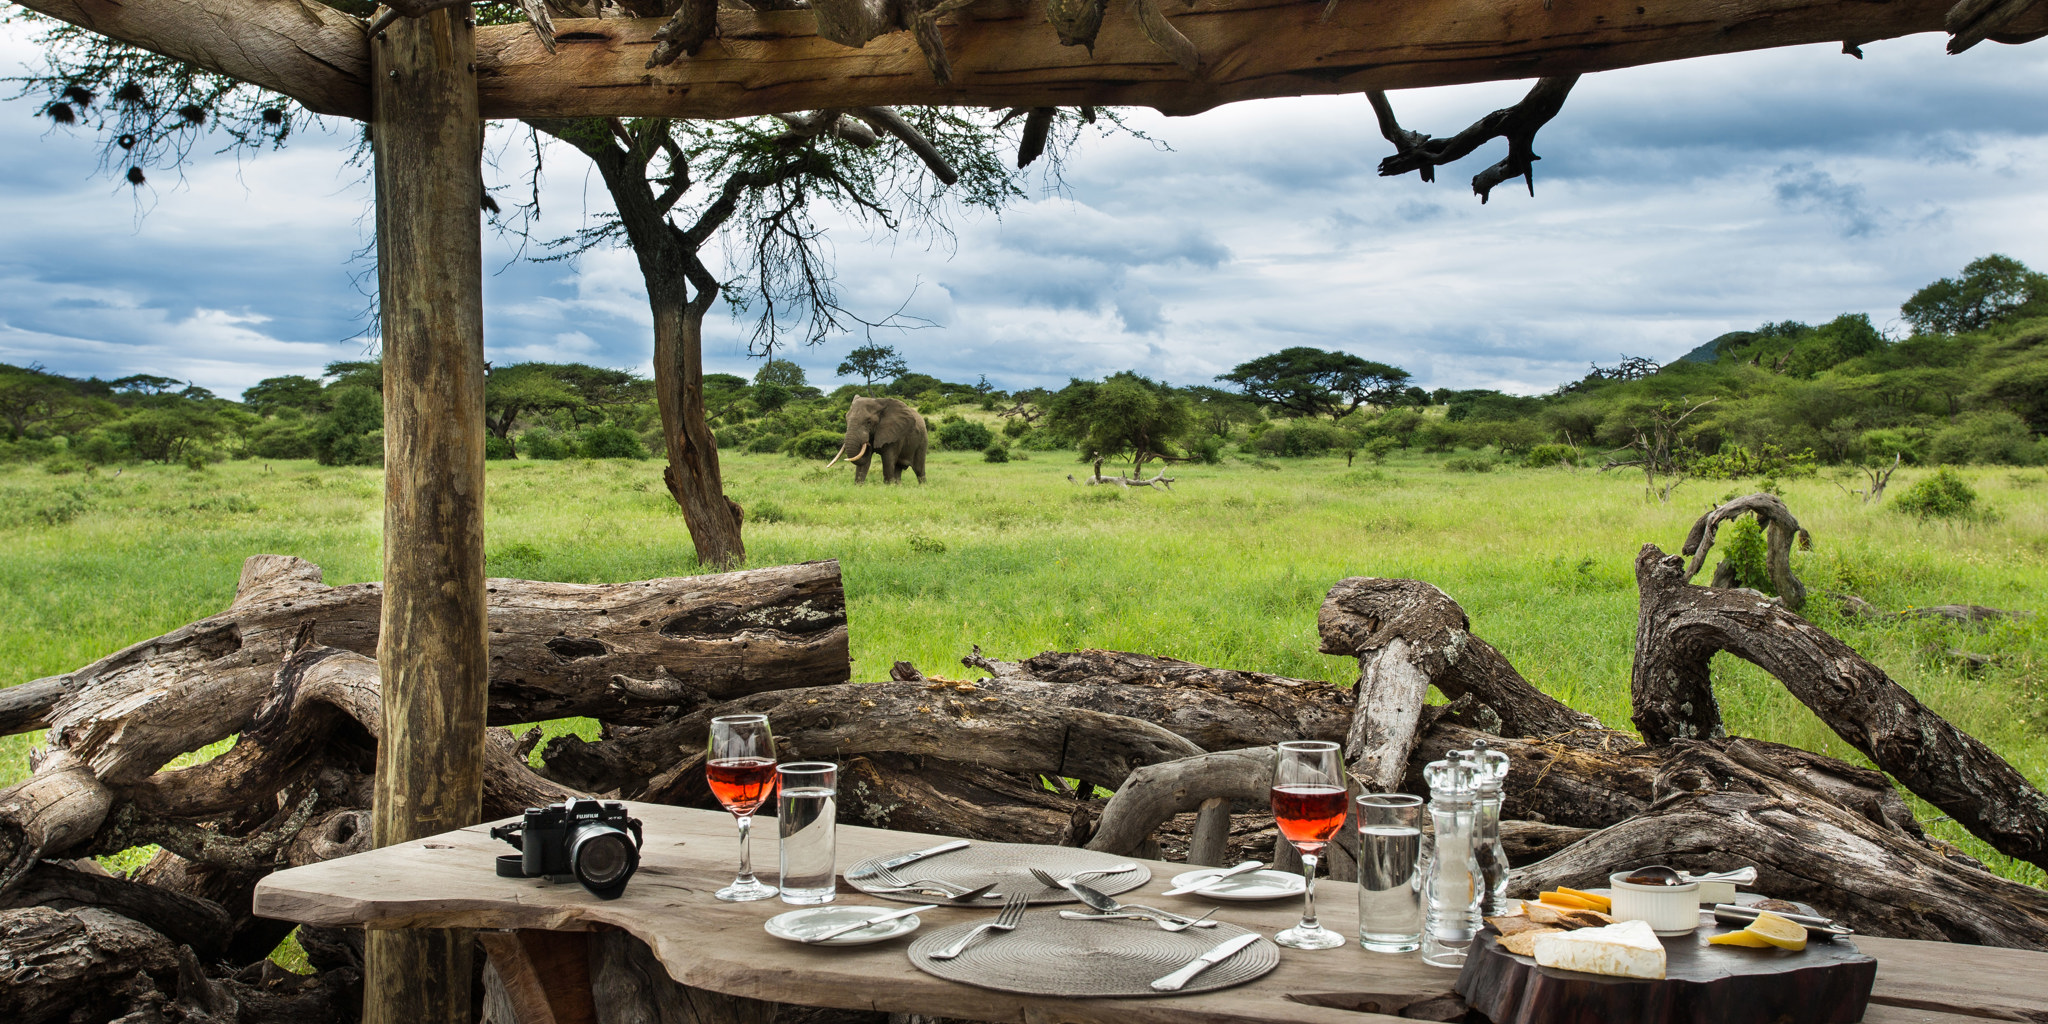 Elephant, waterhole, Ol Donyo, Kenya luxury safari